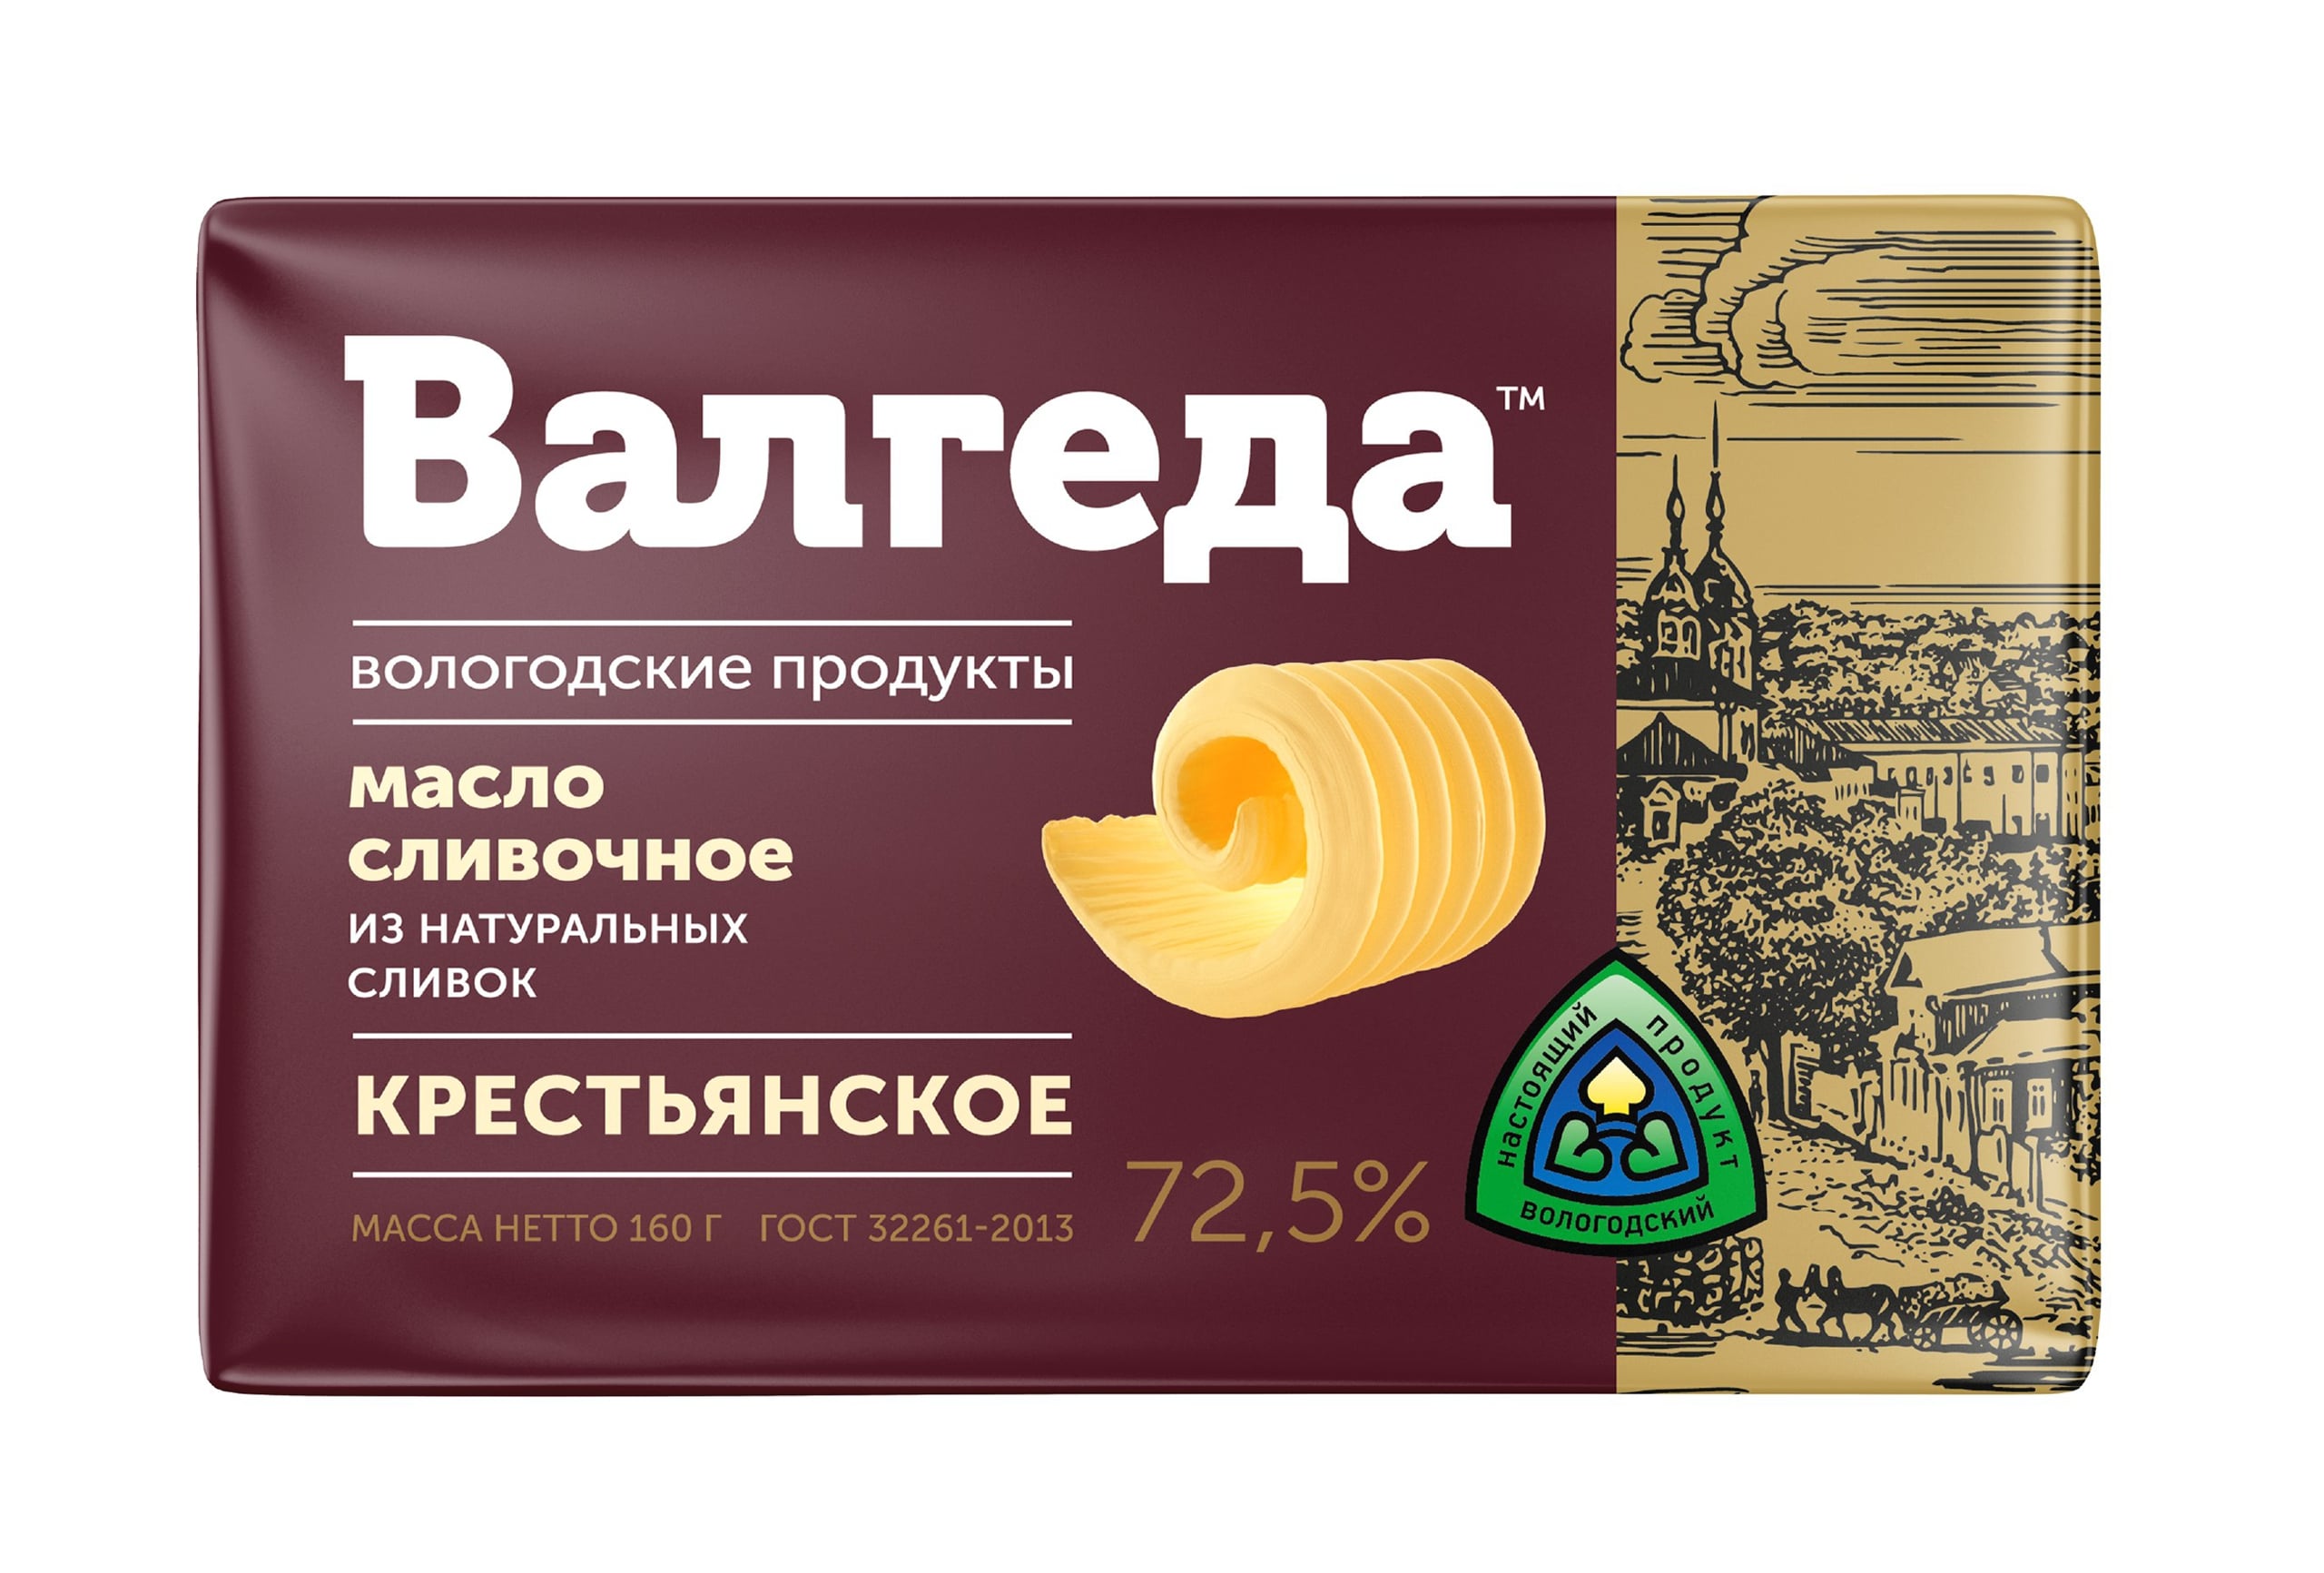 Масло Валгеда Крестьянское 72,5%, 180 г